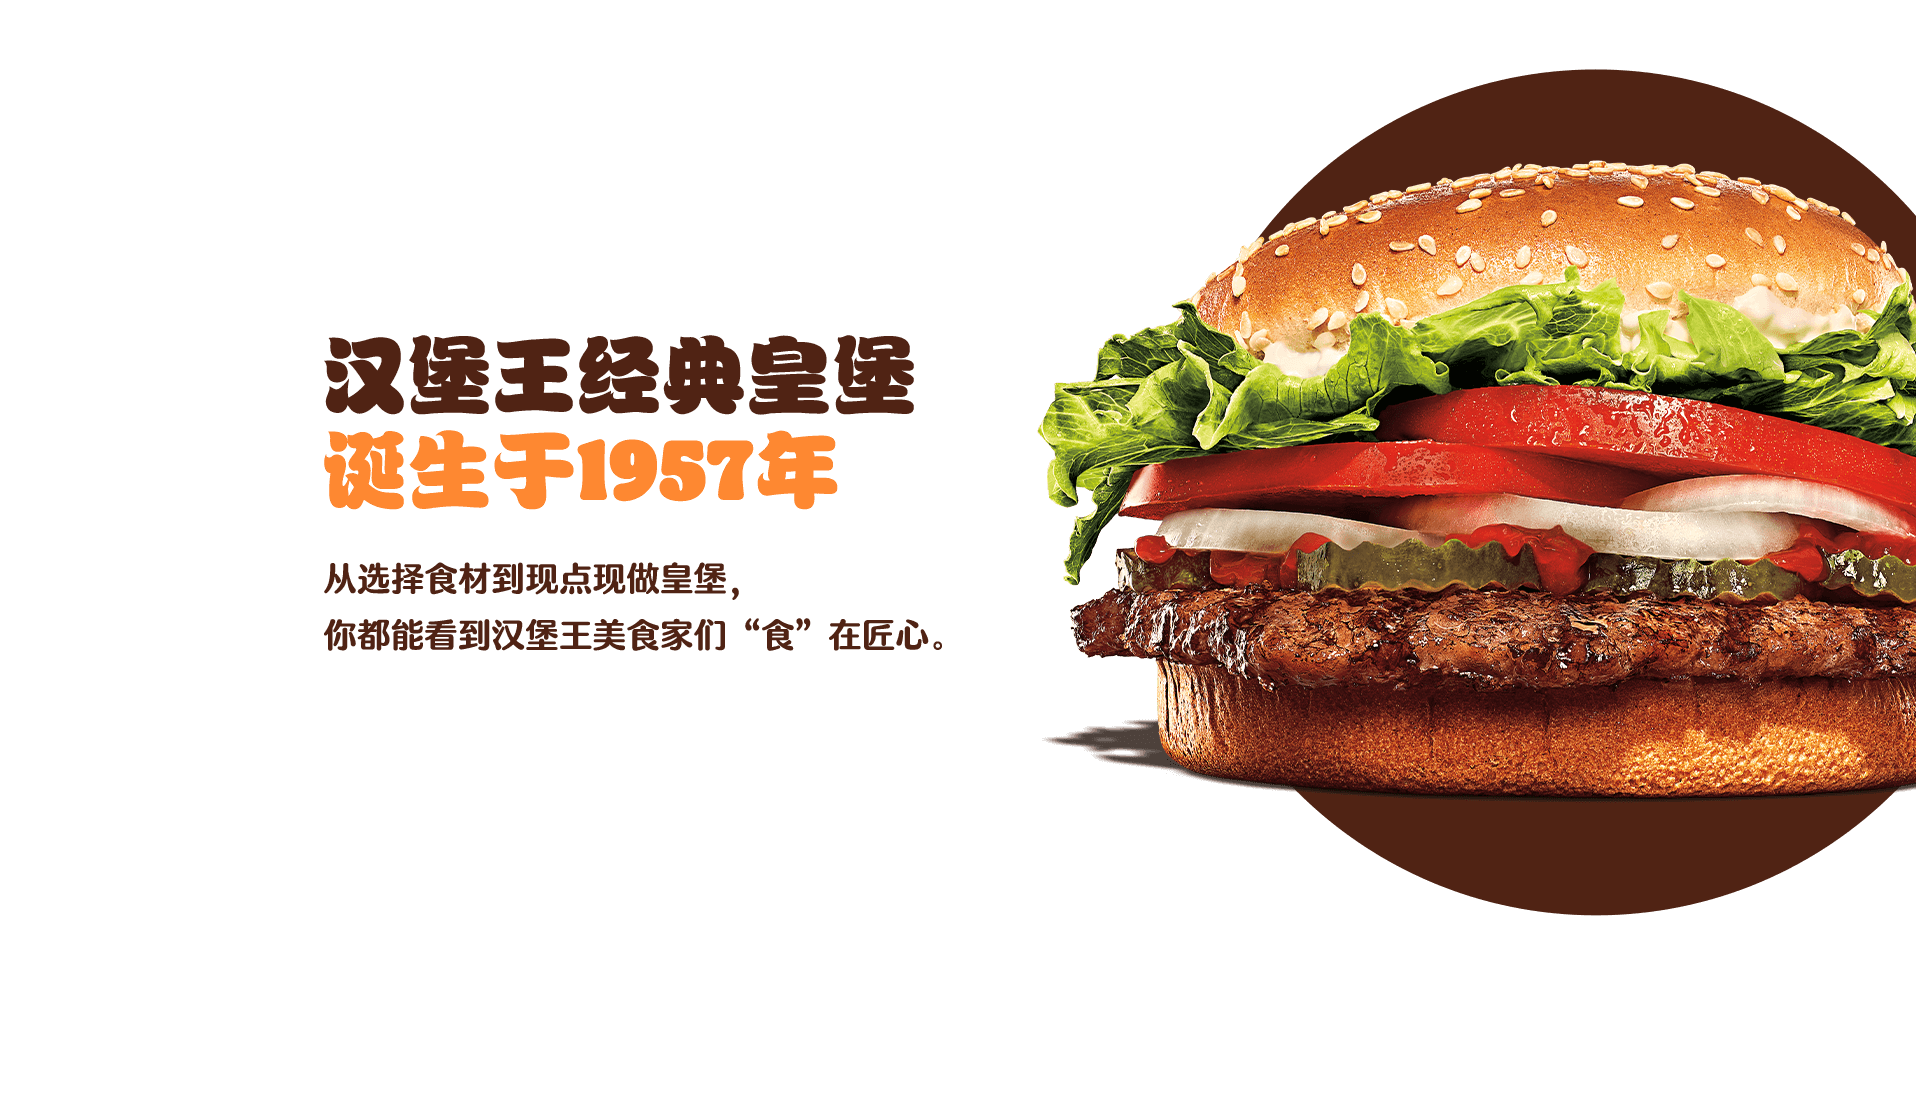 全球门店数领先的汉堡王，在中国为啥干不过肯德基麦当劳？ | CBNData